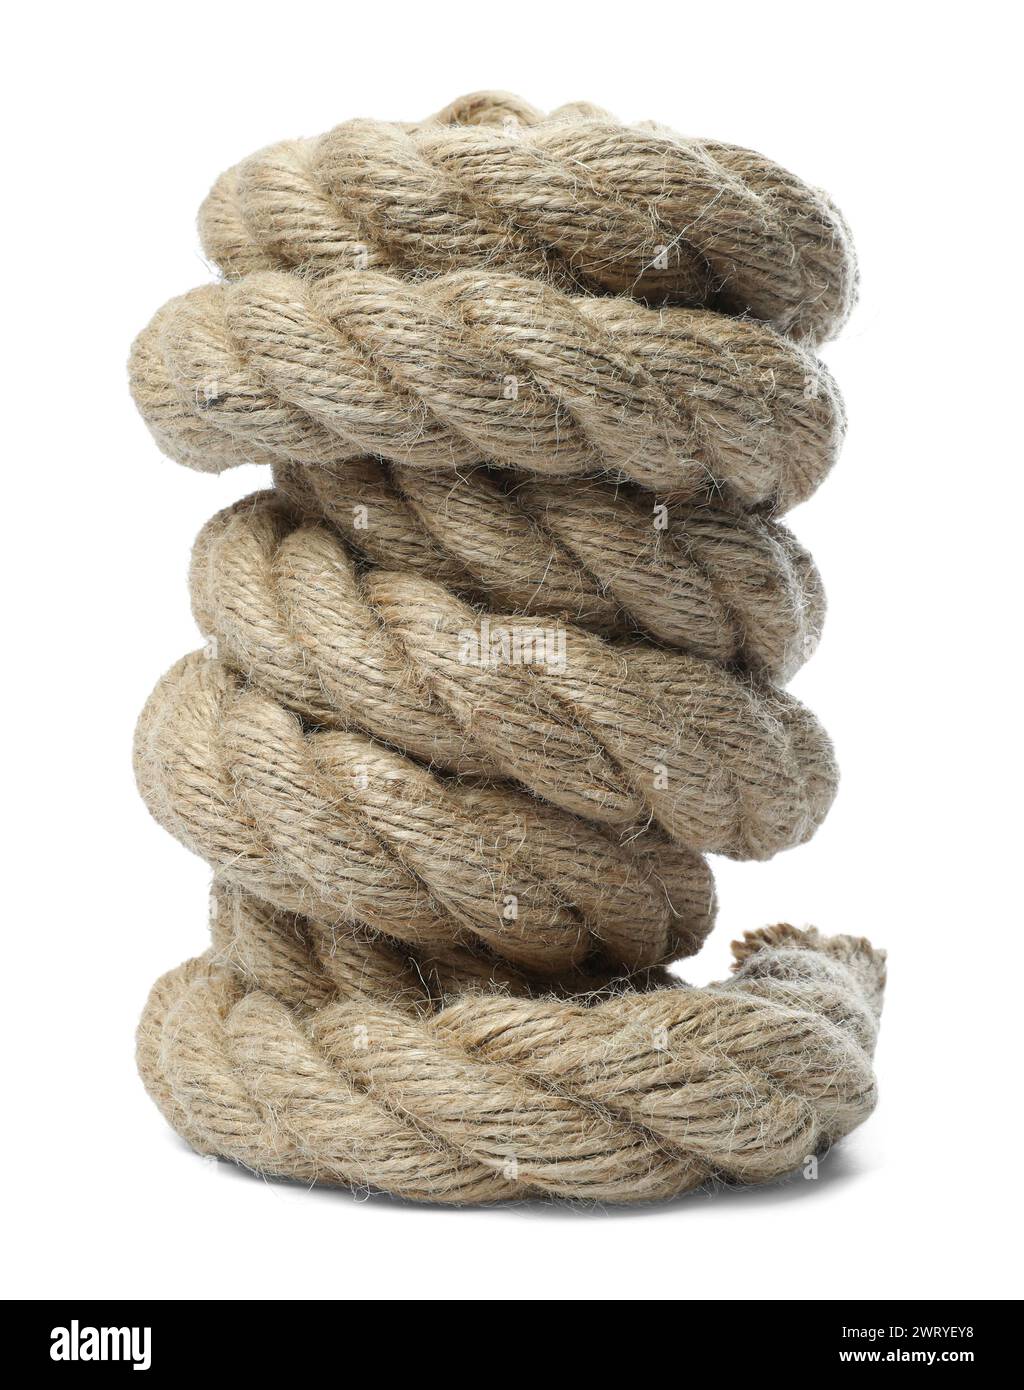 https://c8.alamy.com/comp/2WRYEY8/bundle-of-hemp-rope-isolated-on-white-2WRYEY8.jpg